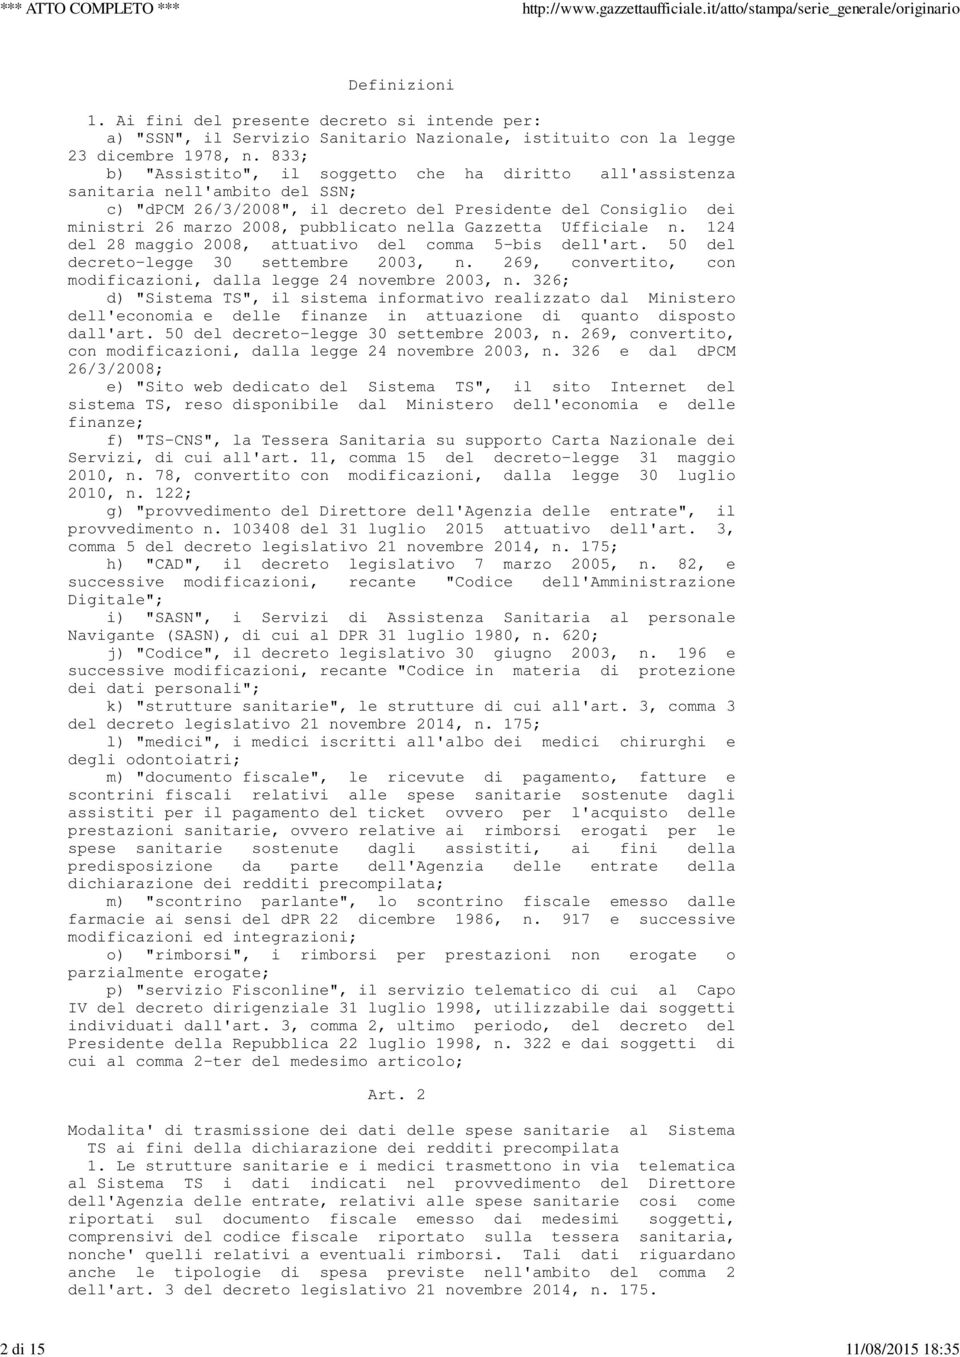 Gazzetta Ufficiale n. 124 del 28 maggio 2008, attuativo del comma 5-bis dell'art. 50 del decreto-legge 30 settembre 2003, n. 269, convertito, con modificazioni, dalla legge 24 novembre 2003, n.